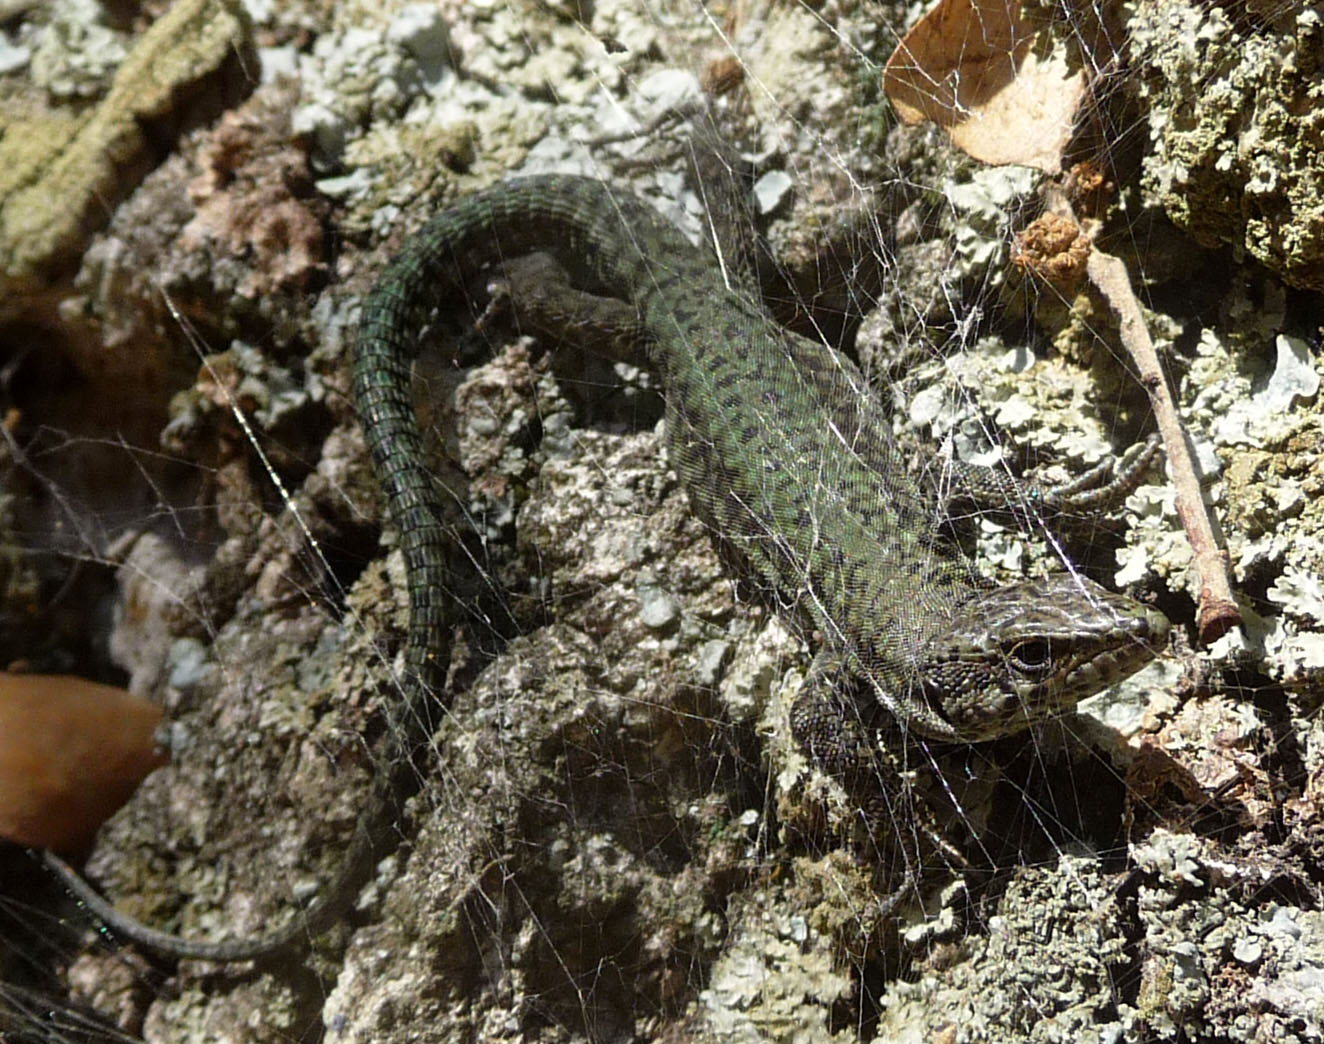 an lizard is standing on a rock near a small bird